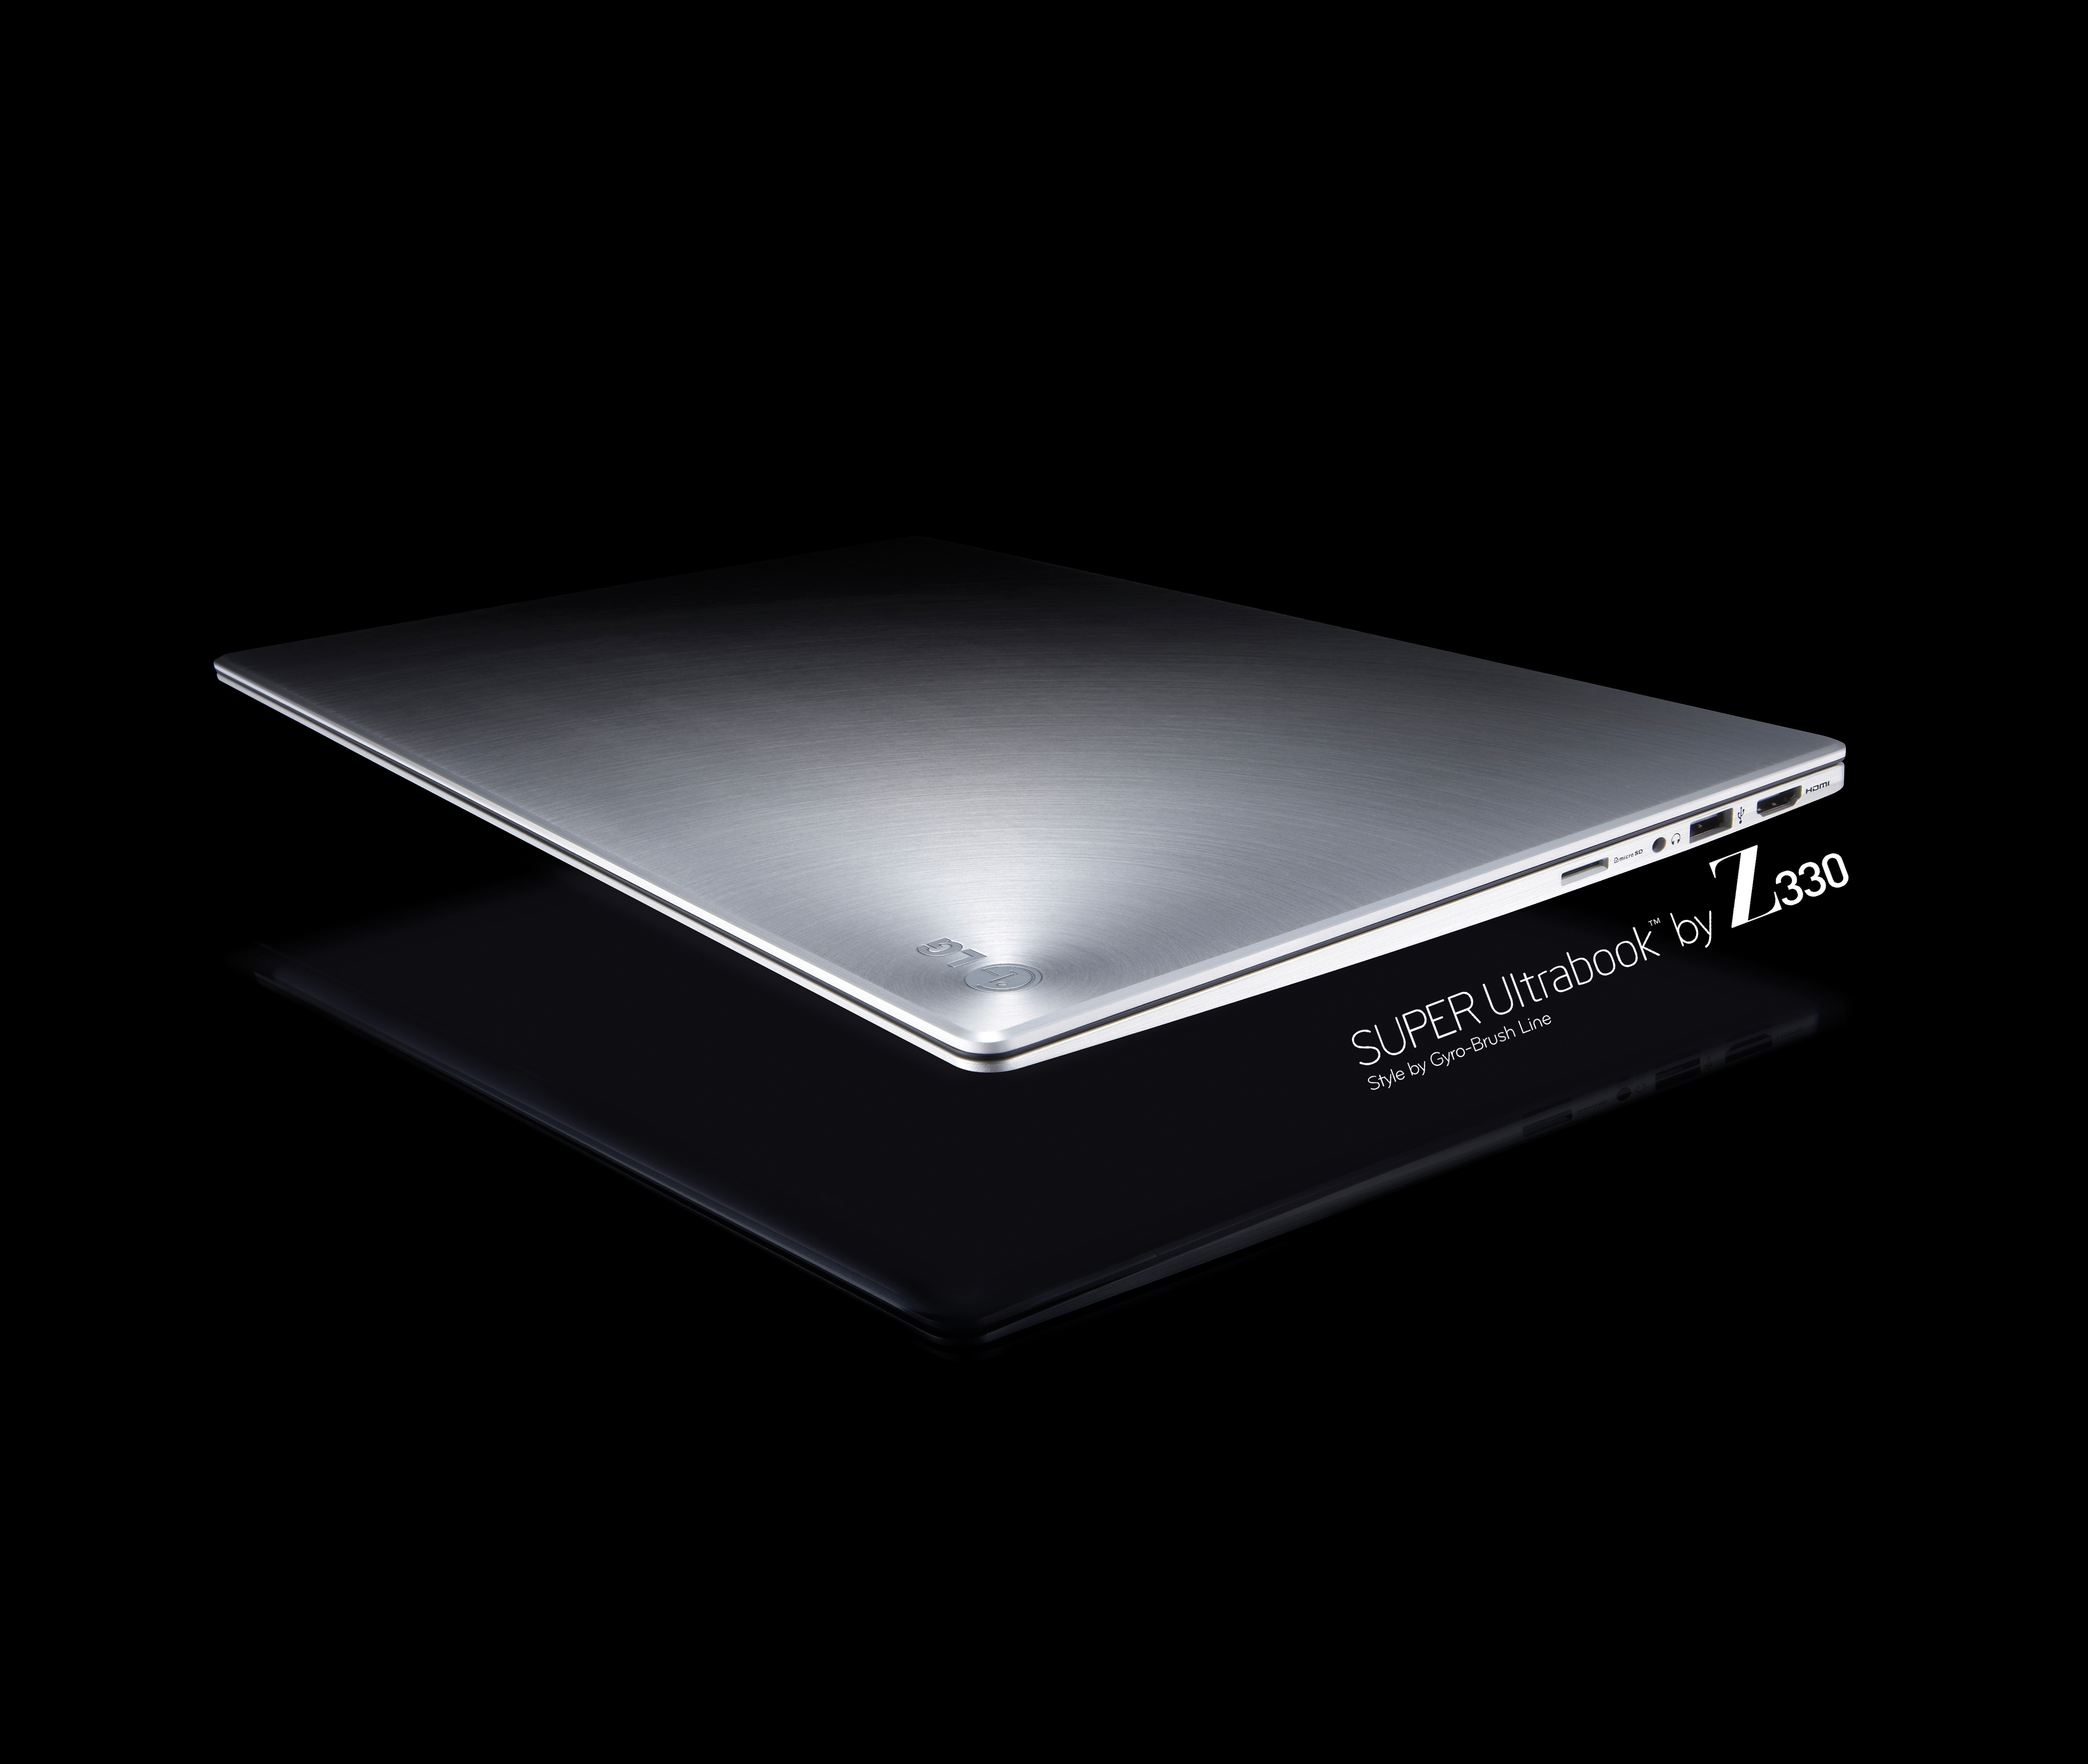 Promo shot of the LG Ultrabook model Z330